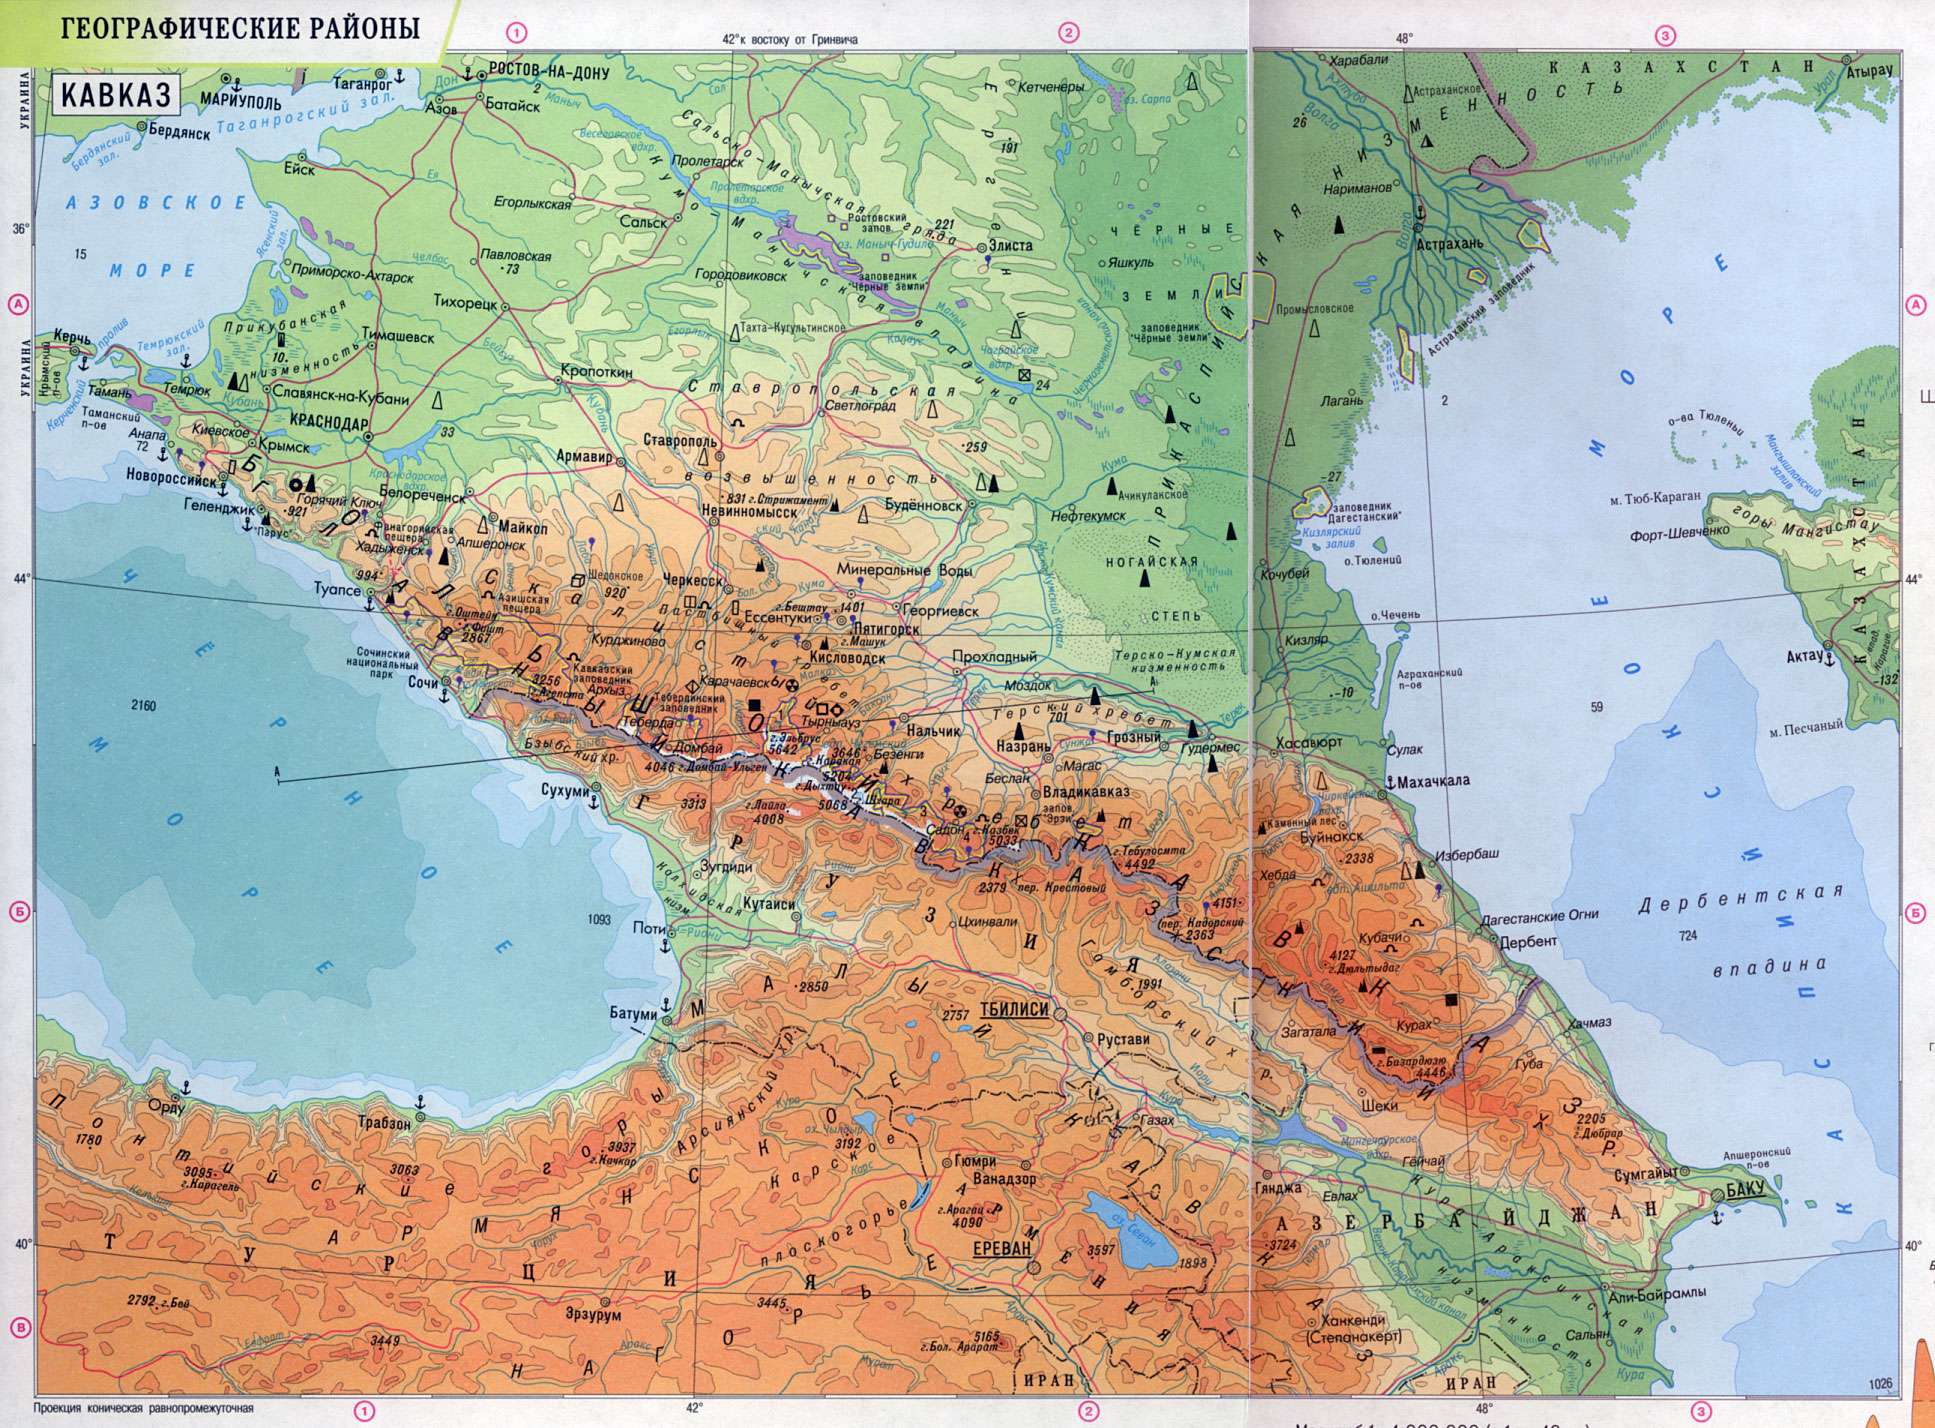 Кавказ - один из древнейших топонимов в Евразии